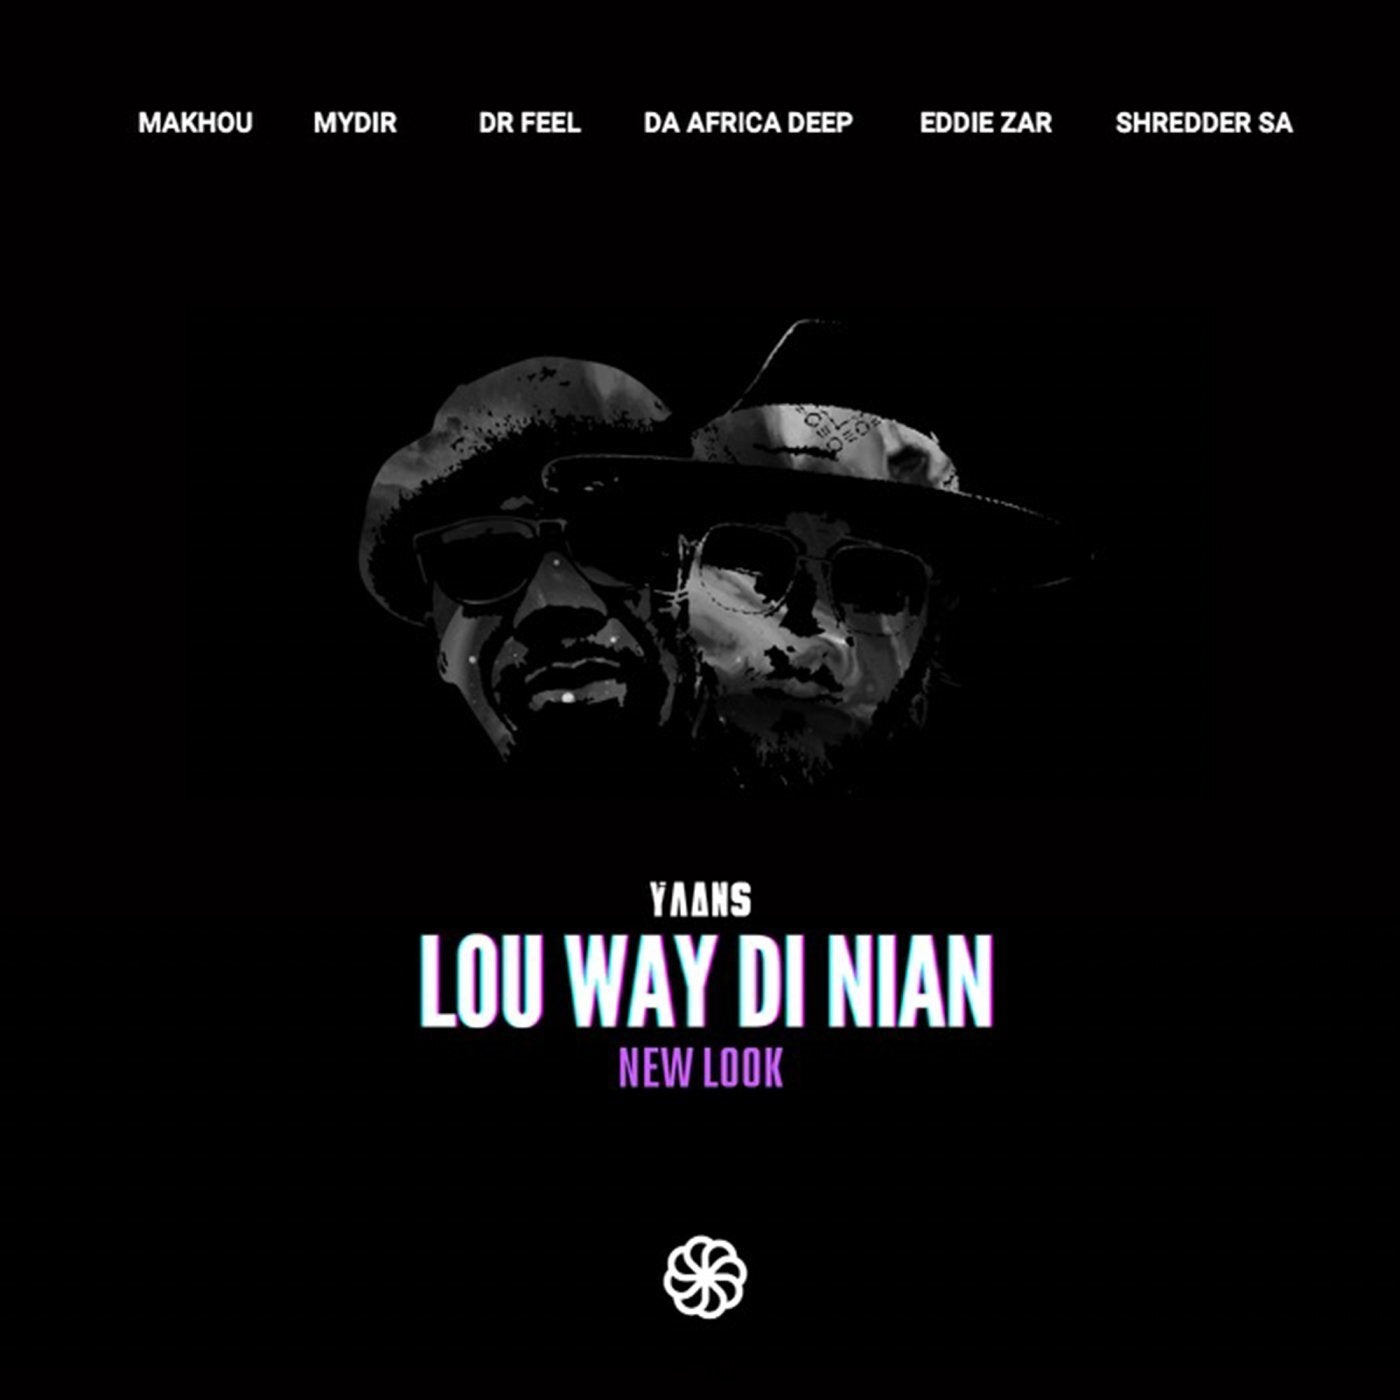 Lou Way Di Nian